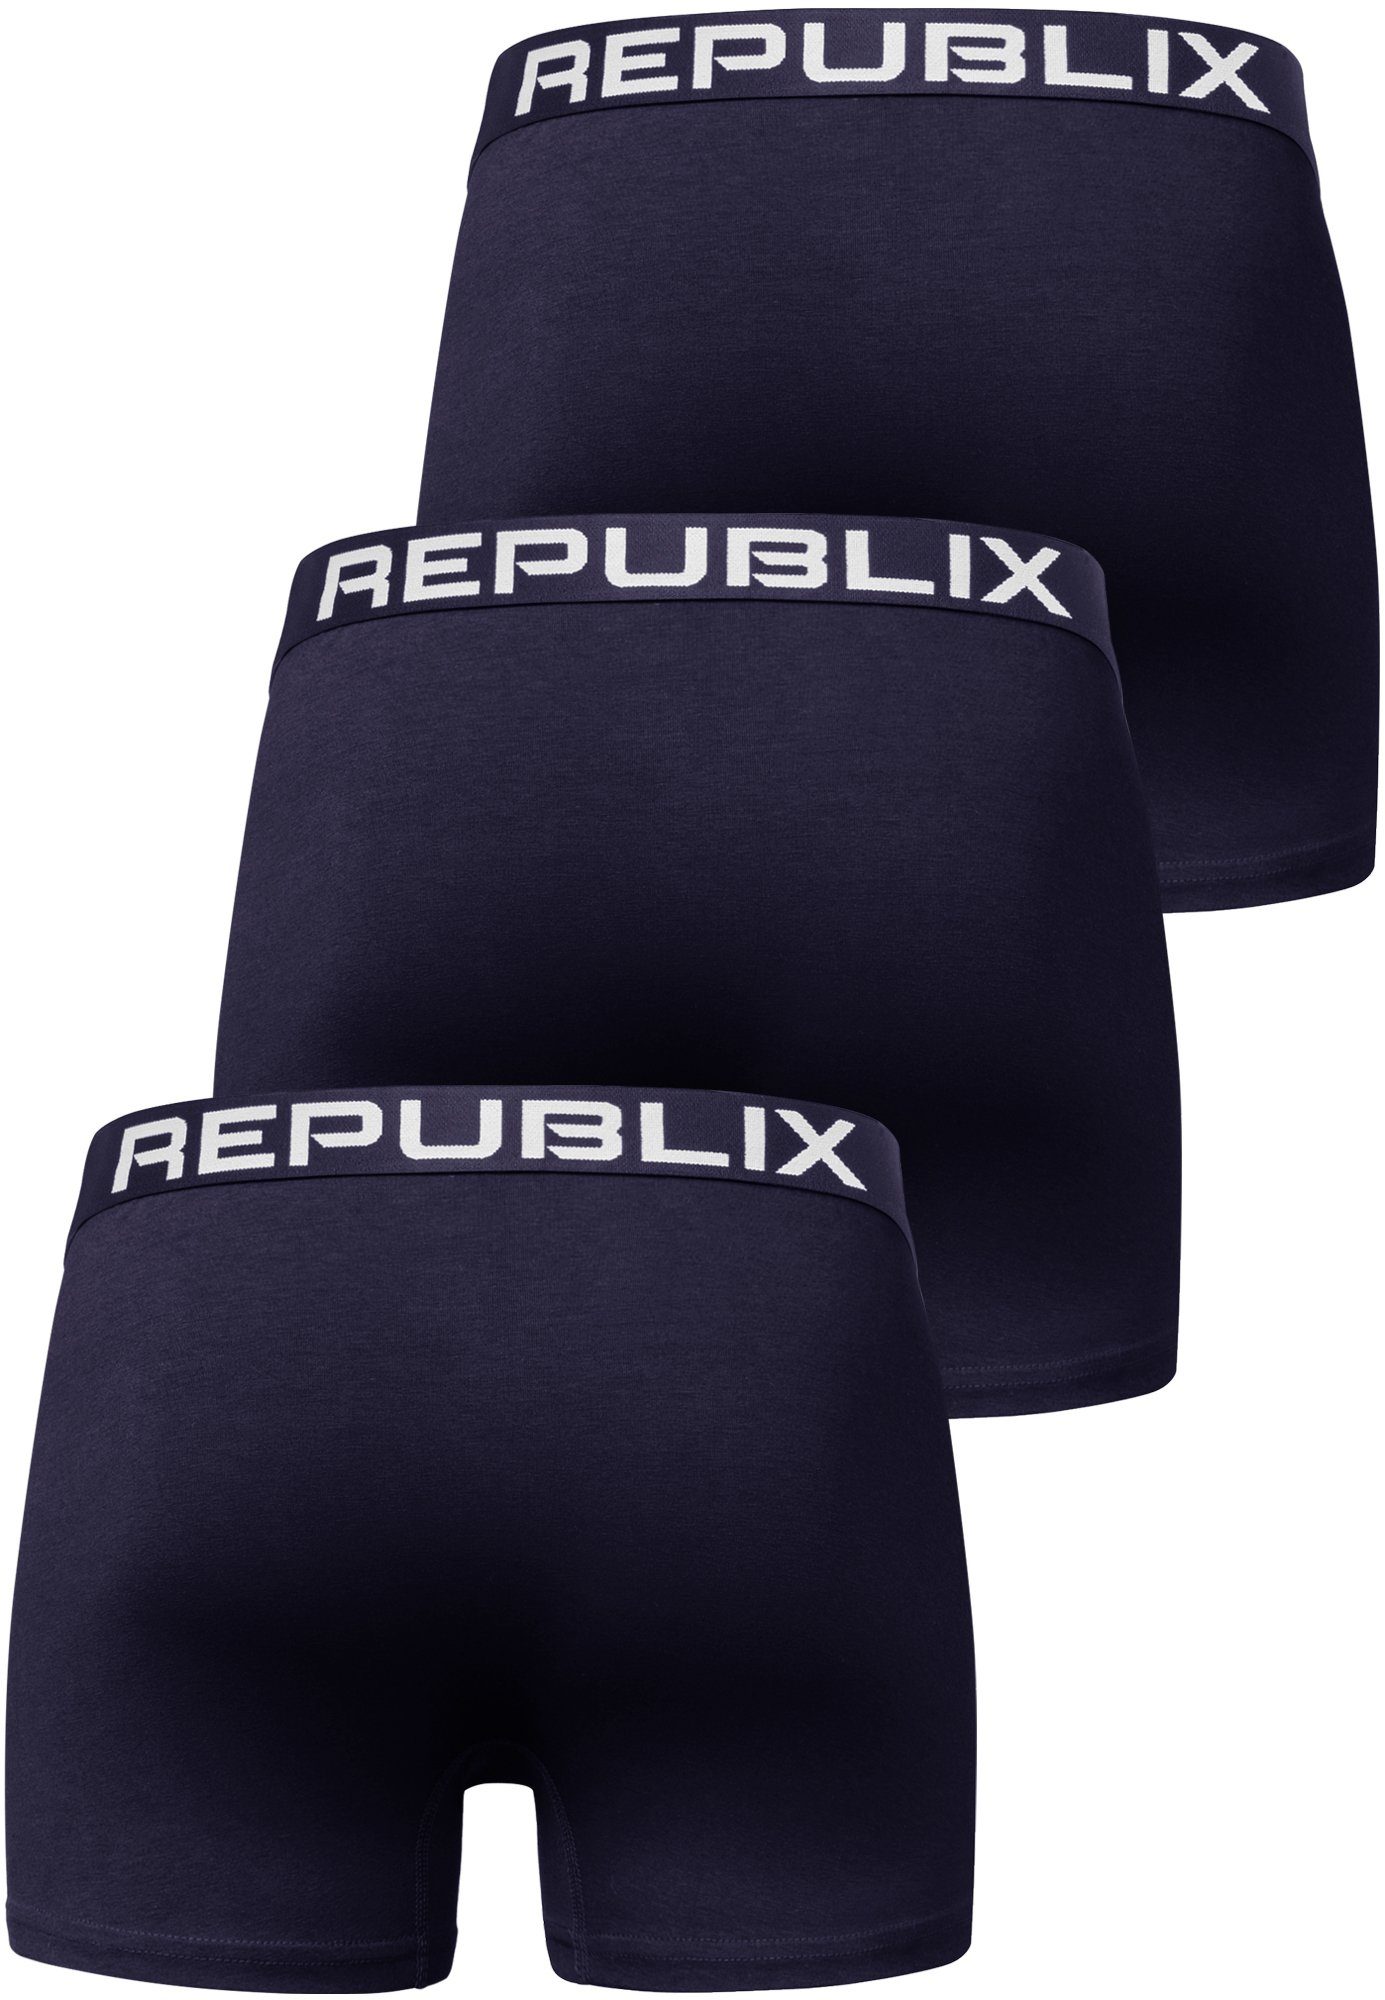 DON (3er-Pack) Boxershorts Herren Unterwäsche Männer Baumwolle Unterhose Navyblau/Navyblau REPUBLIX